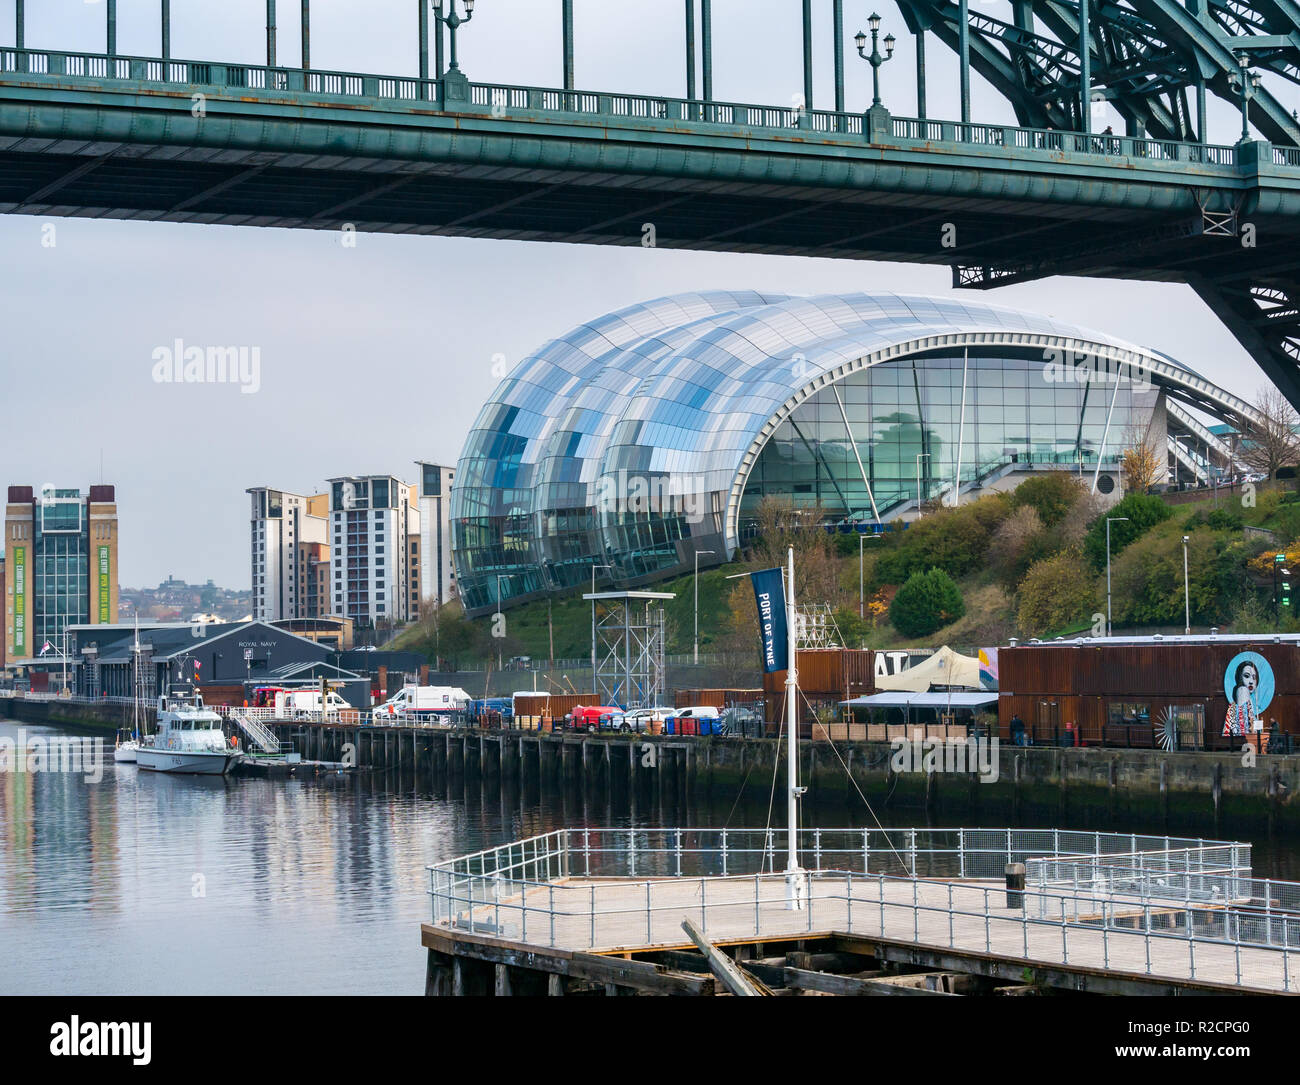 Vista bajo el Puente Tyne de Sage Gateshead edificio del centro de cultura, Rver Tyne, Newcastle Upon Tyne, Inglaterra, Reino Unido. Foto de stock